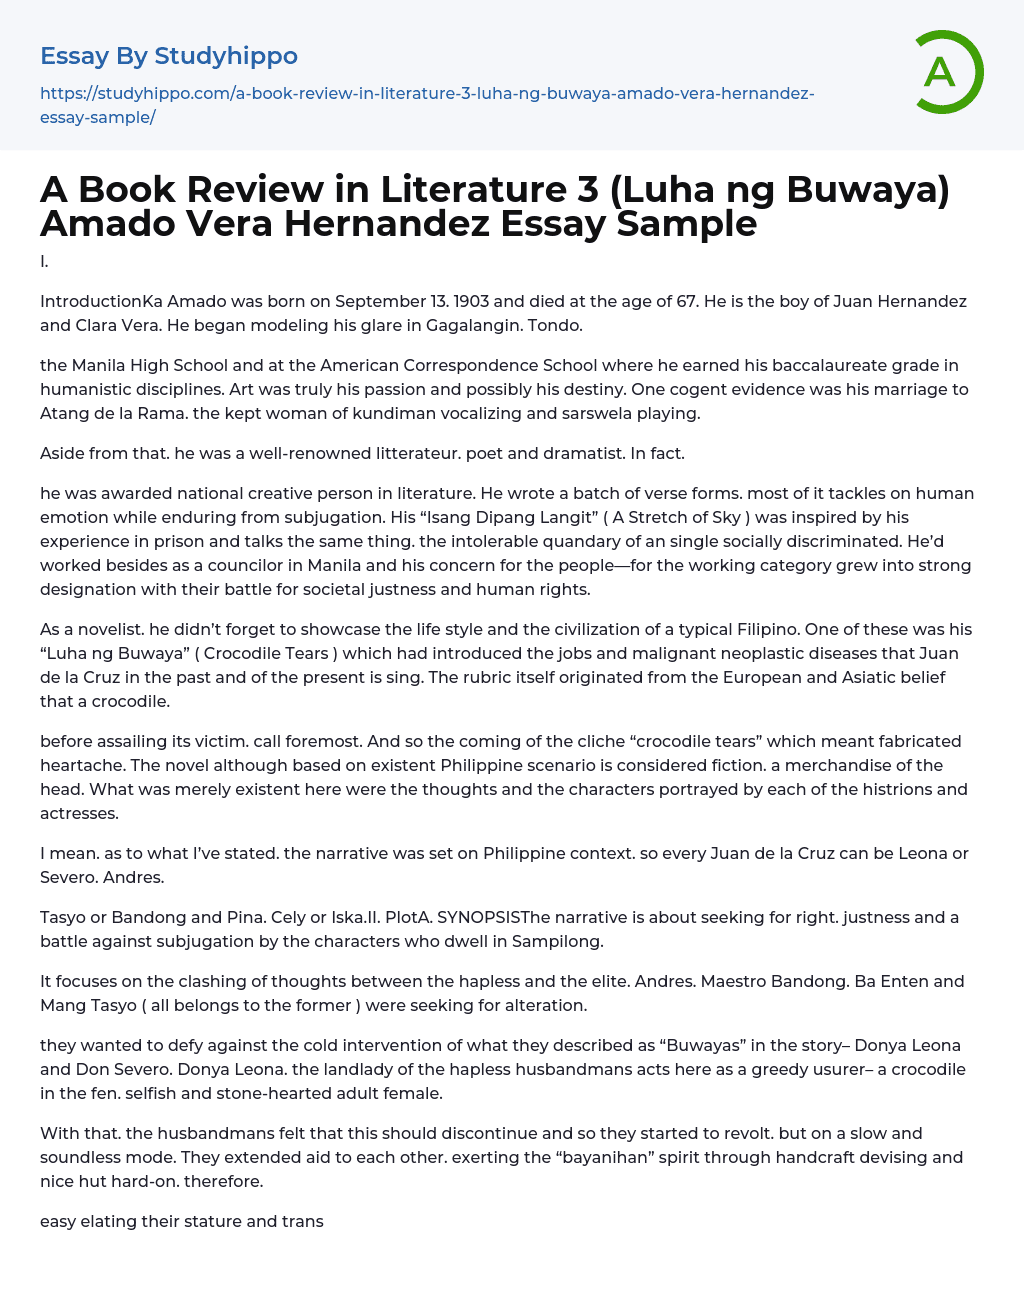 A Book Review in Literature 3 (Luha ng Buwaya) Amado Vera Hernandez Essay Sample